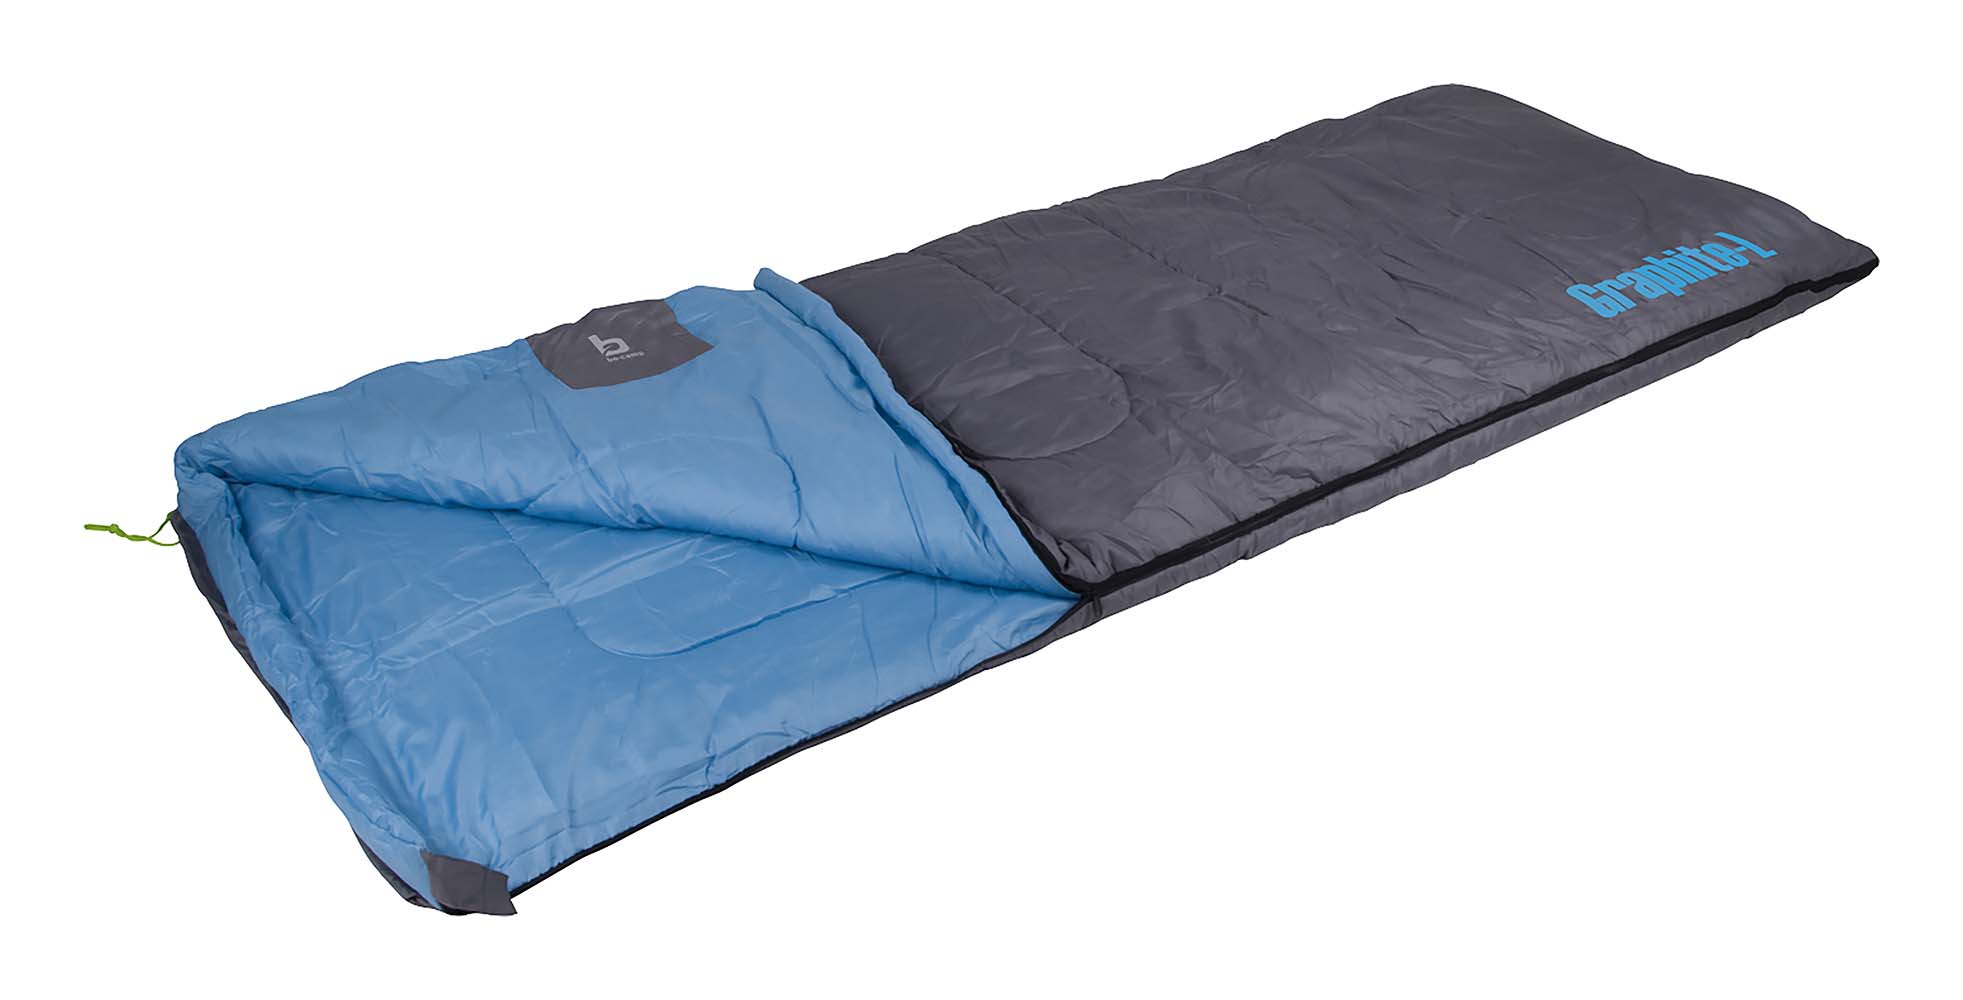 3605753 Ein komfortabler Schlafsack. Dieser Schlafsack kann ab Temperaturen von 2 °C verwendet werden, und ist ab 12 °C sehr komfortabel. Ausgestattet mit einer hochwertigen 3D-Hohlfaser-Füllung (250 g/m²). Darüber hinaus hat dieser Schlafsack einen weichen Innen- und Außenbezug aus Polyester-Baumwolle. Wenn der Reißverschluss geöffnet ist, kann er als Decke verwendet werden. Zudem kann er mit dem Reißverschluss mit einem anderen Bo-Camp-Schlafsack kombiniert werden. Dieser Schlafsack hat zur Temperaturregelung einen Reißverschluss am Fußende, und hat ein Zugband, einen angenehmen Oberrand sowie ein kleines Münzfach auf der Innenseite. In dem mitgelieferten Futteral platzsparend mitzunehmen.